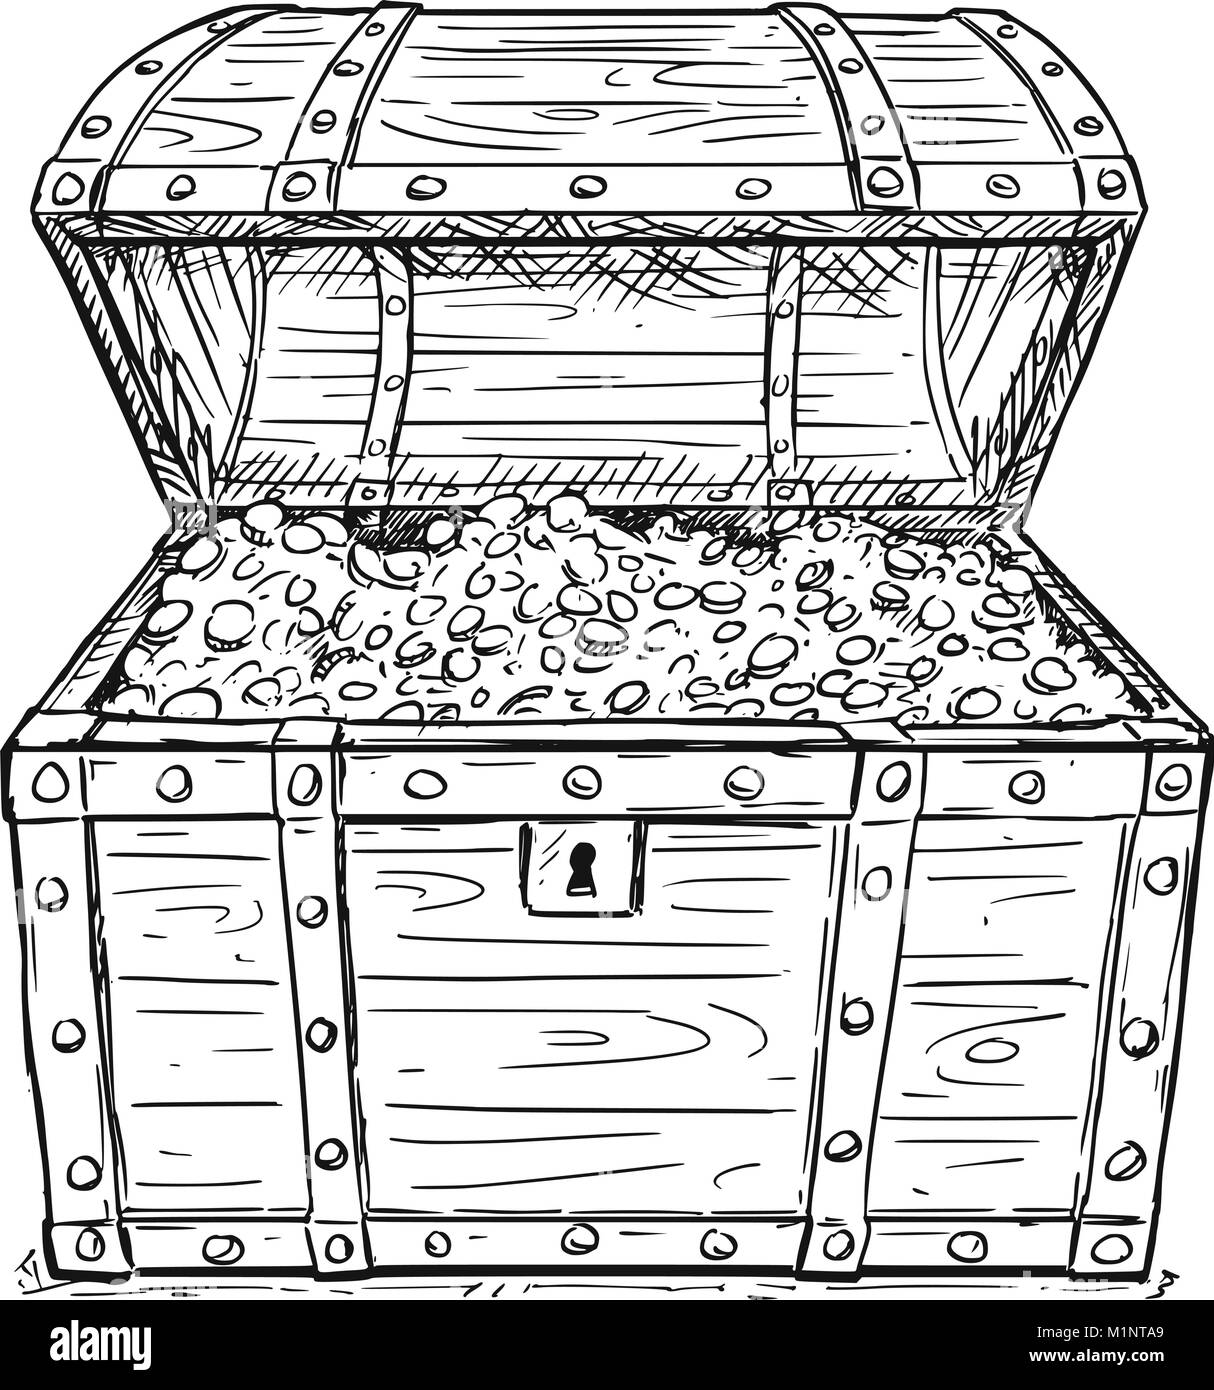 Cartoon disegno vettoriale del vecchio pirata aperto Scrigno con monete d'oro all'interno Illustrazione Vettoriale